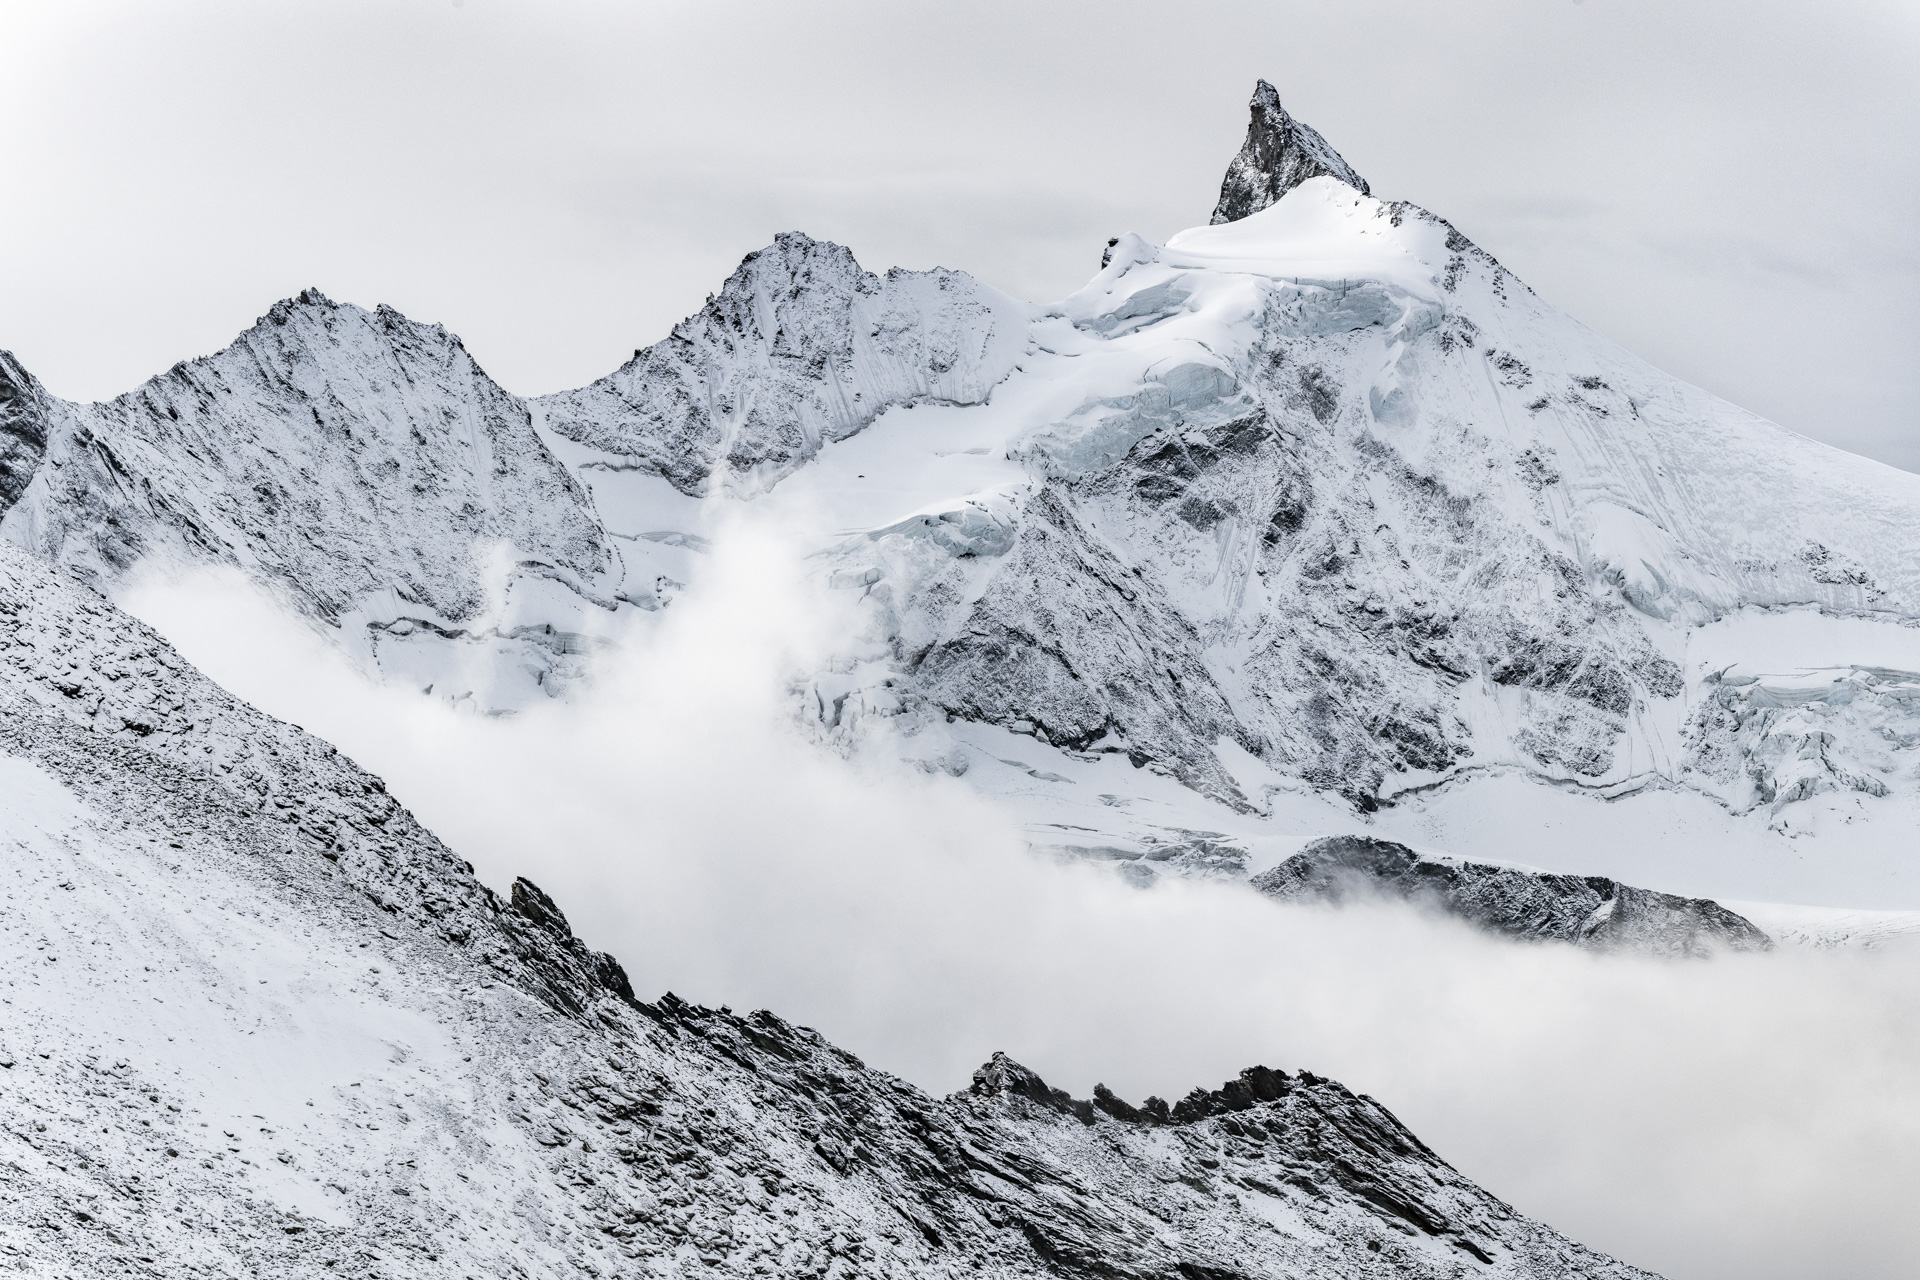 Premiere neige sur le Zinalrothorn - tableau photo paysage montagne prise par un photographe hautes alpes